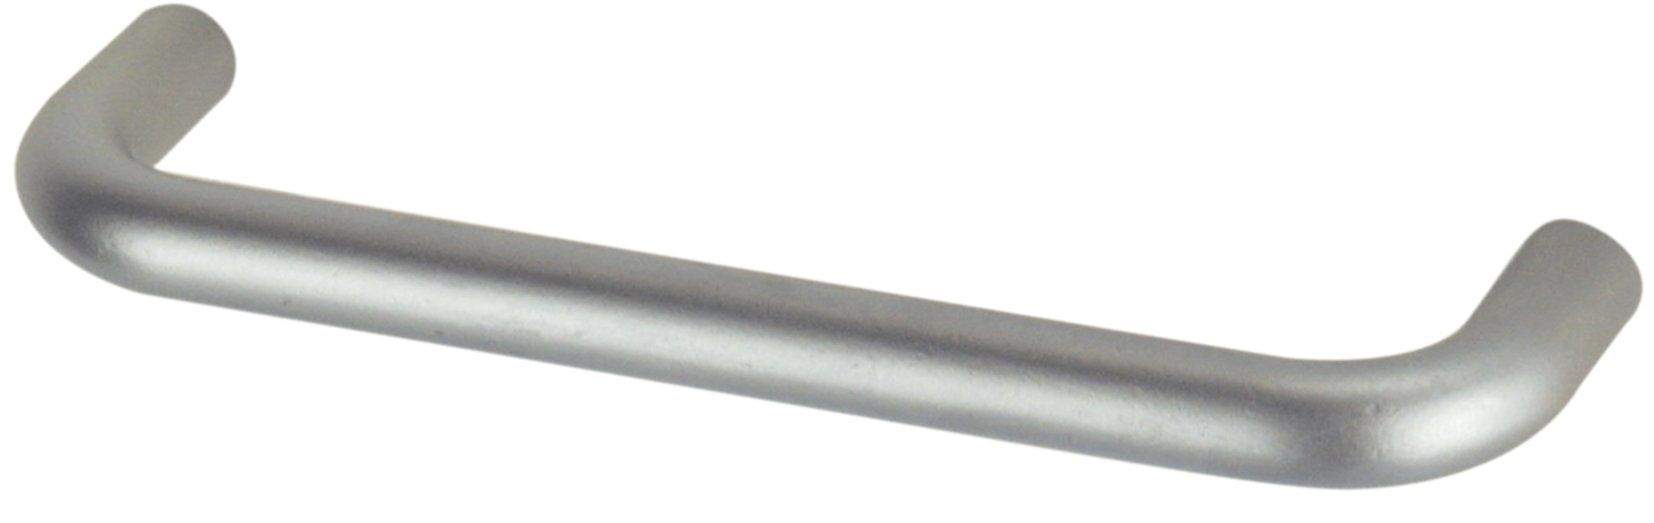 Asa de alambre con inserto de acero cromado satinado, anchura 104 mm, profundidad 8 mm, profundidad 28 mm, centros 96 mm, 1 piez